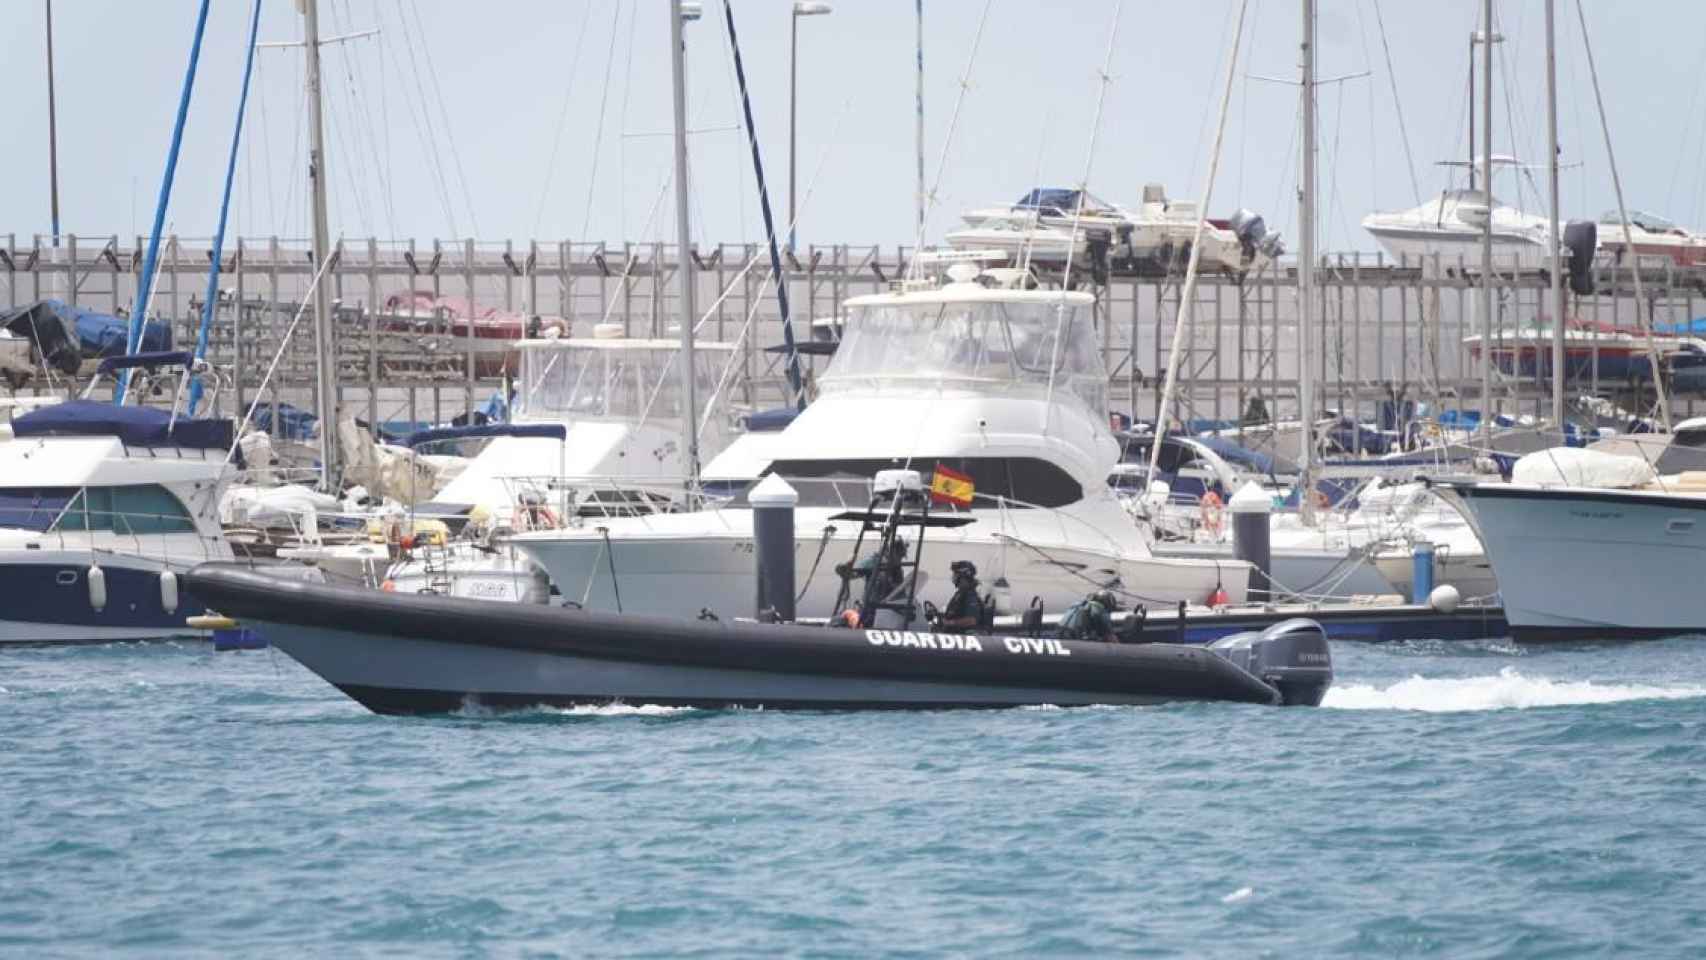 Tomás Gimeno pudo seguir navegando después de lastrar a sus hijas y tirar su móvil al mar /EP